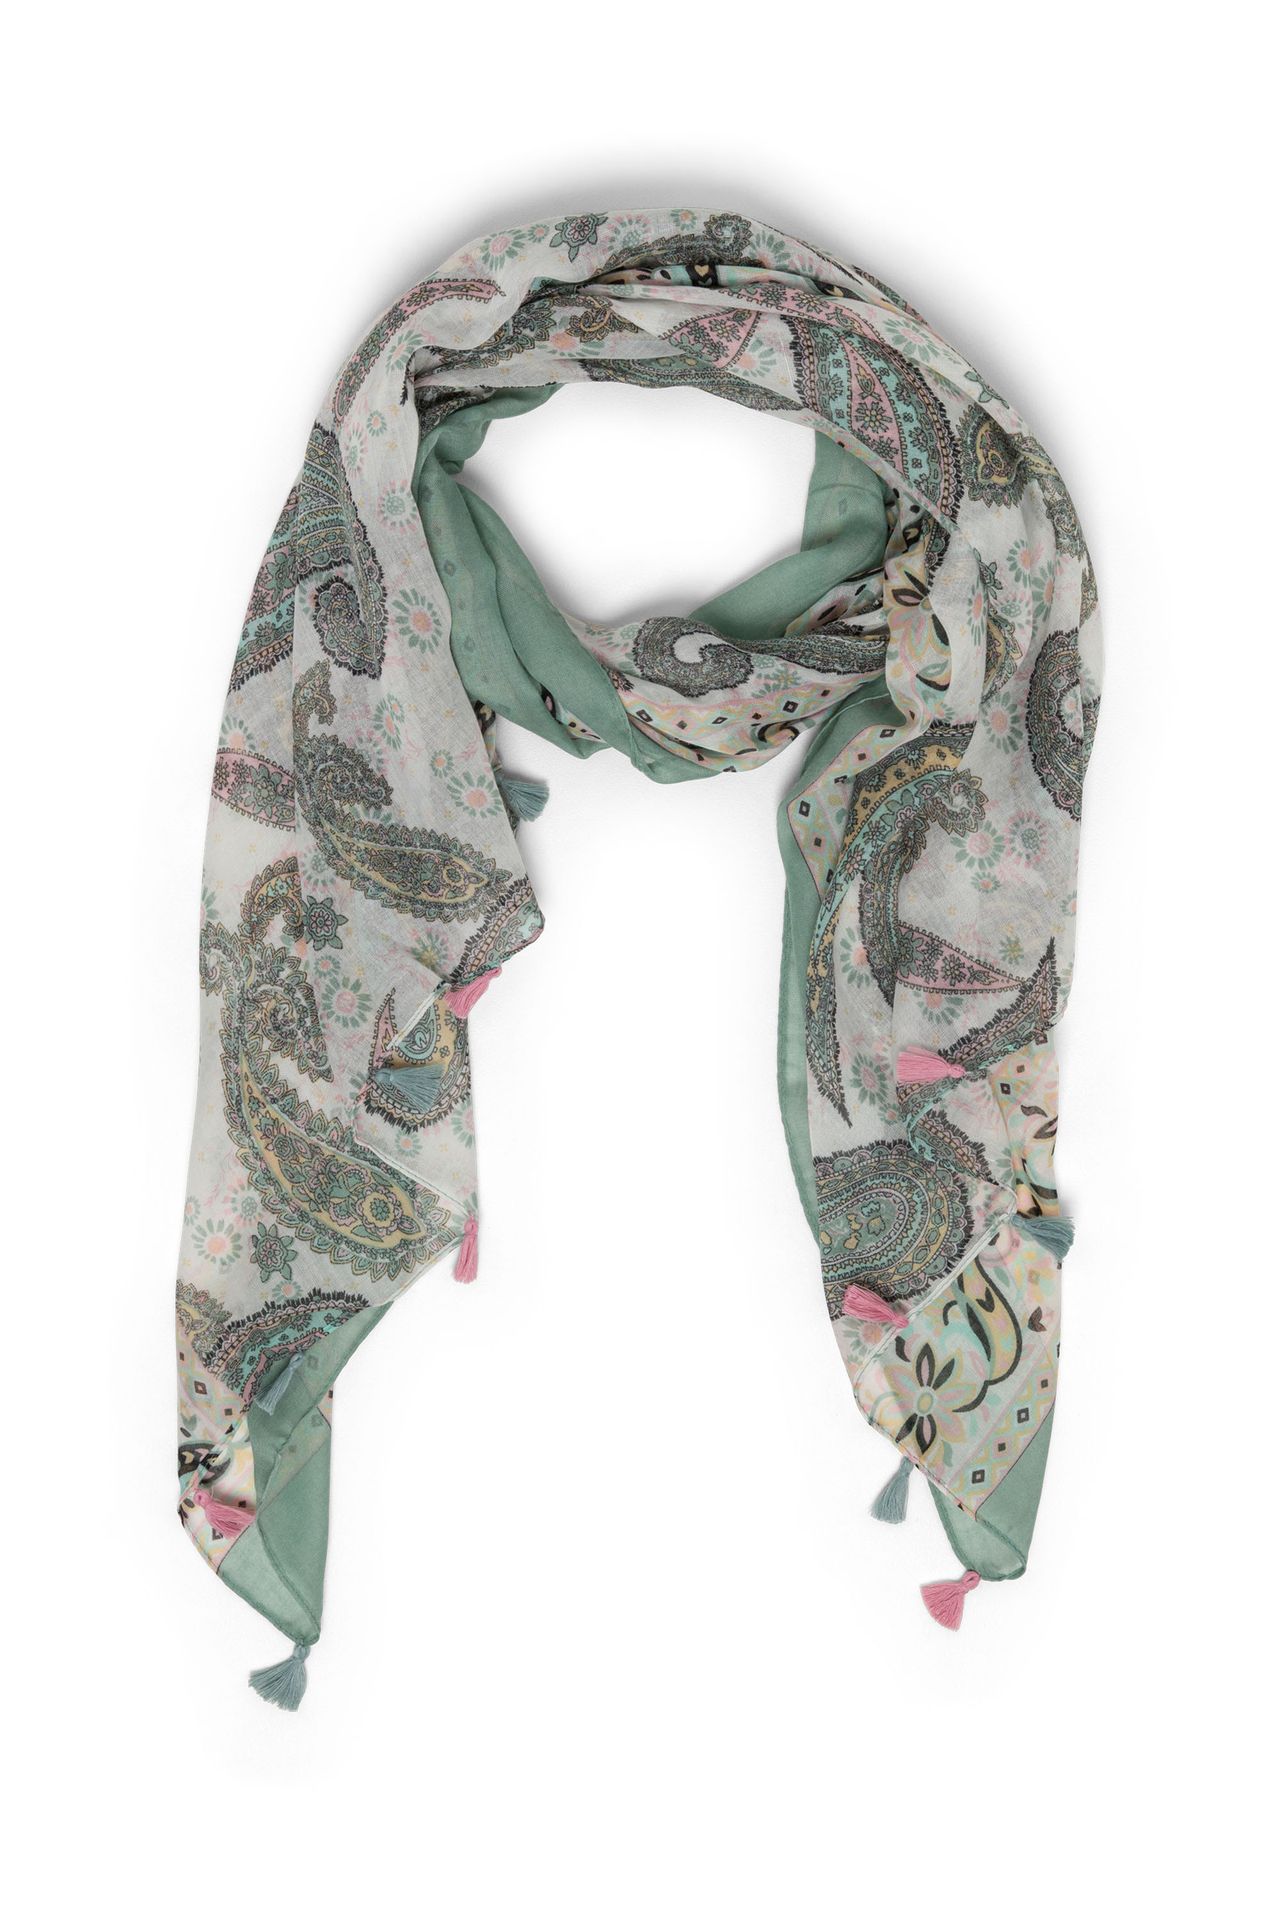 Norah Groene sjaal met tassels grey green multicolor 213600-061